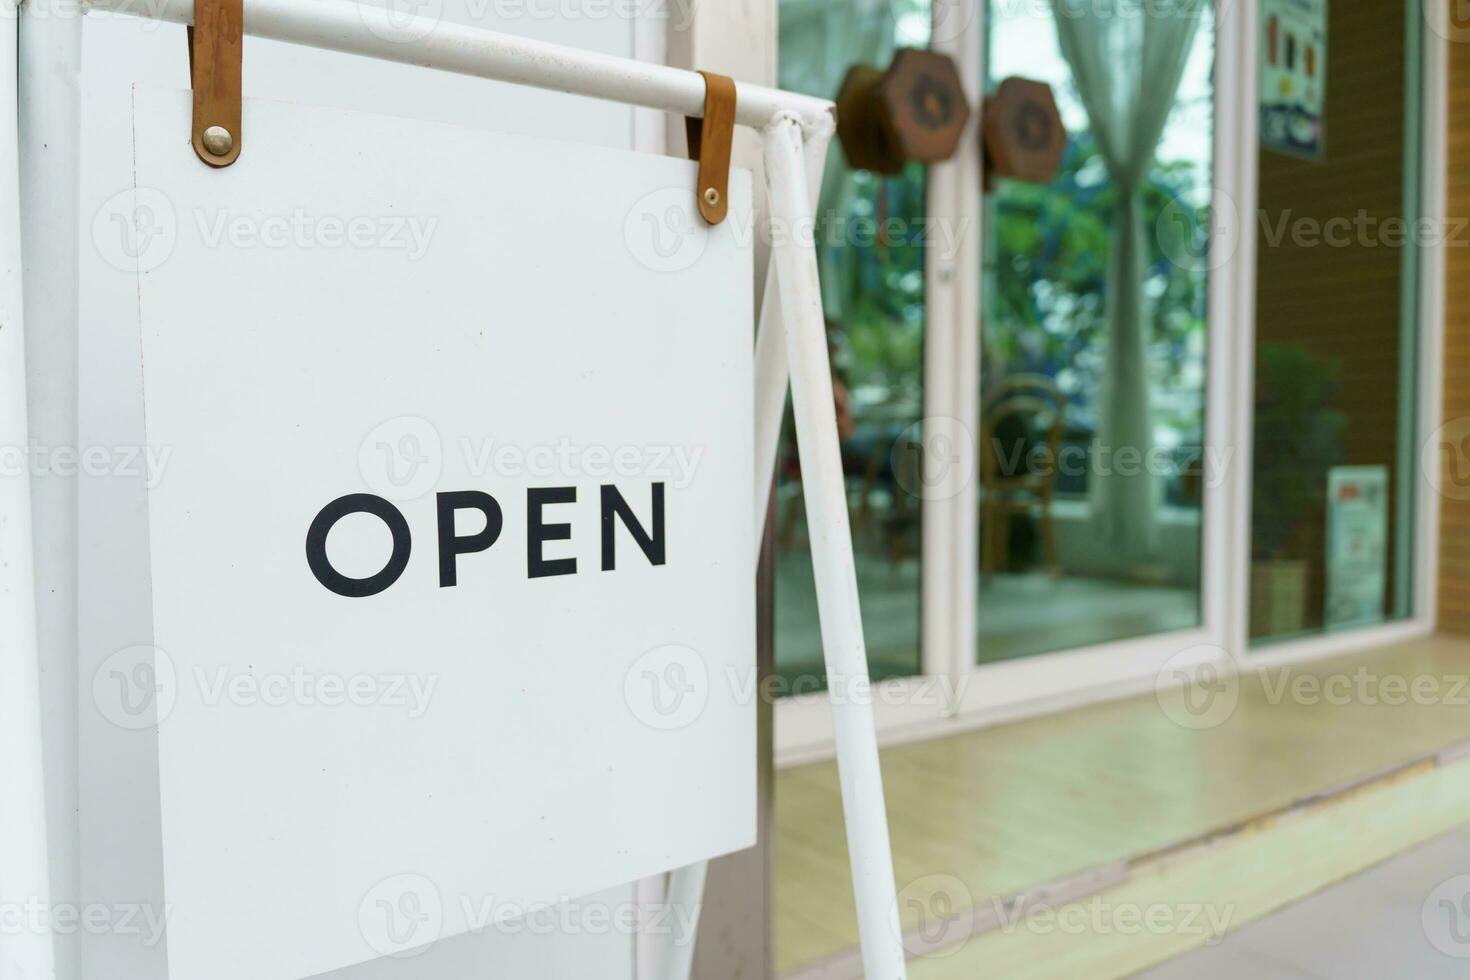 öffnen Zeichen Tafel. Tafel oder Start von Öffnung herzlich willkommen Eingang von klein Geschäft Cafe oder Restaurant und Werbung mit öffnen Zeichen foto